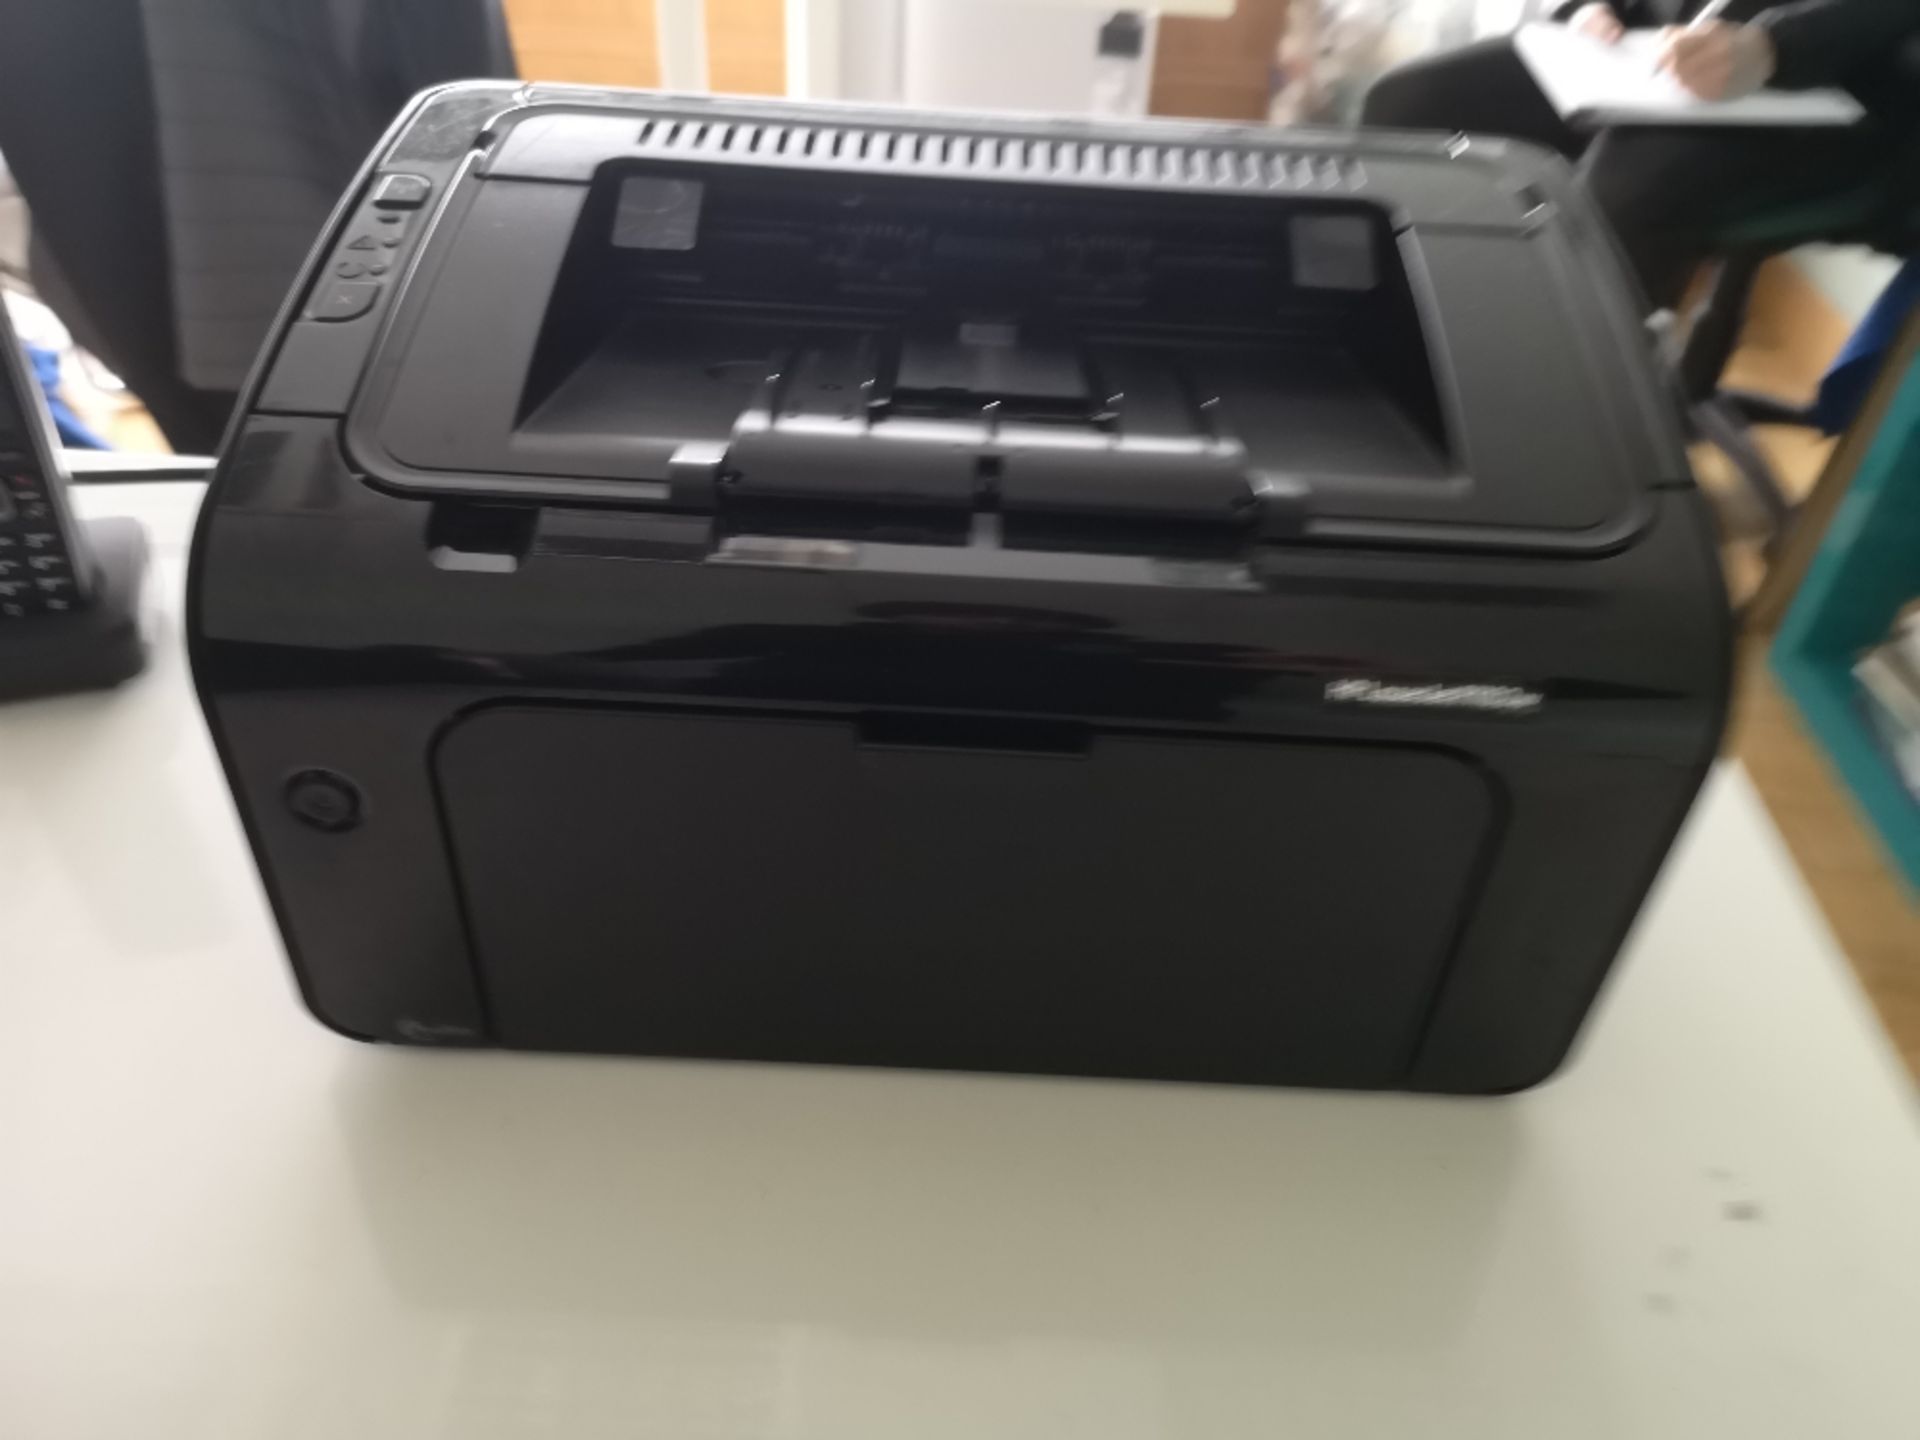 HP LaserJet P1102w Printer - Image 2 of 3